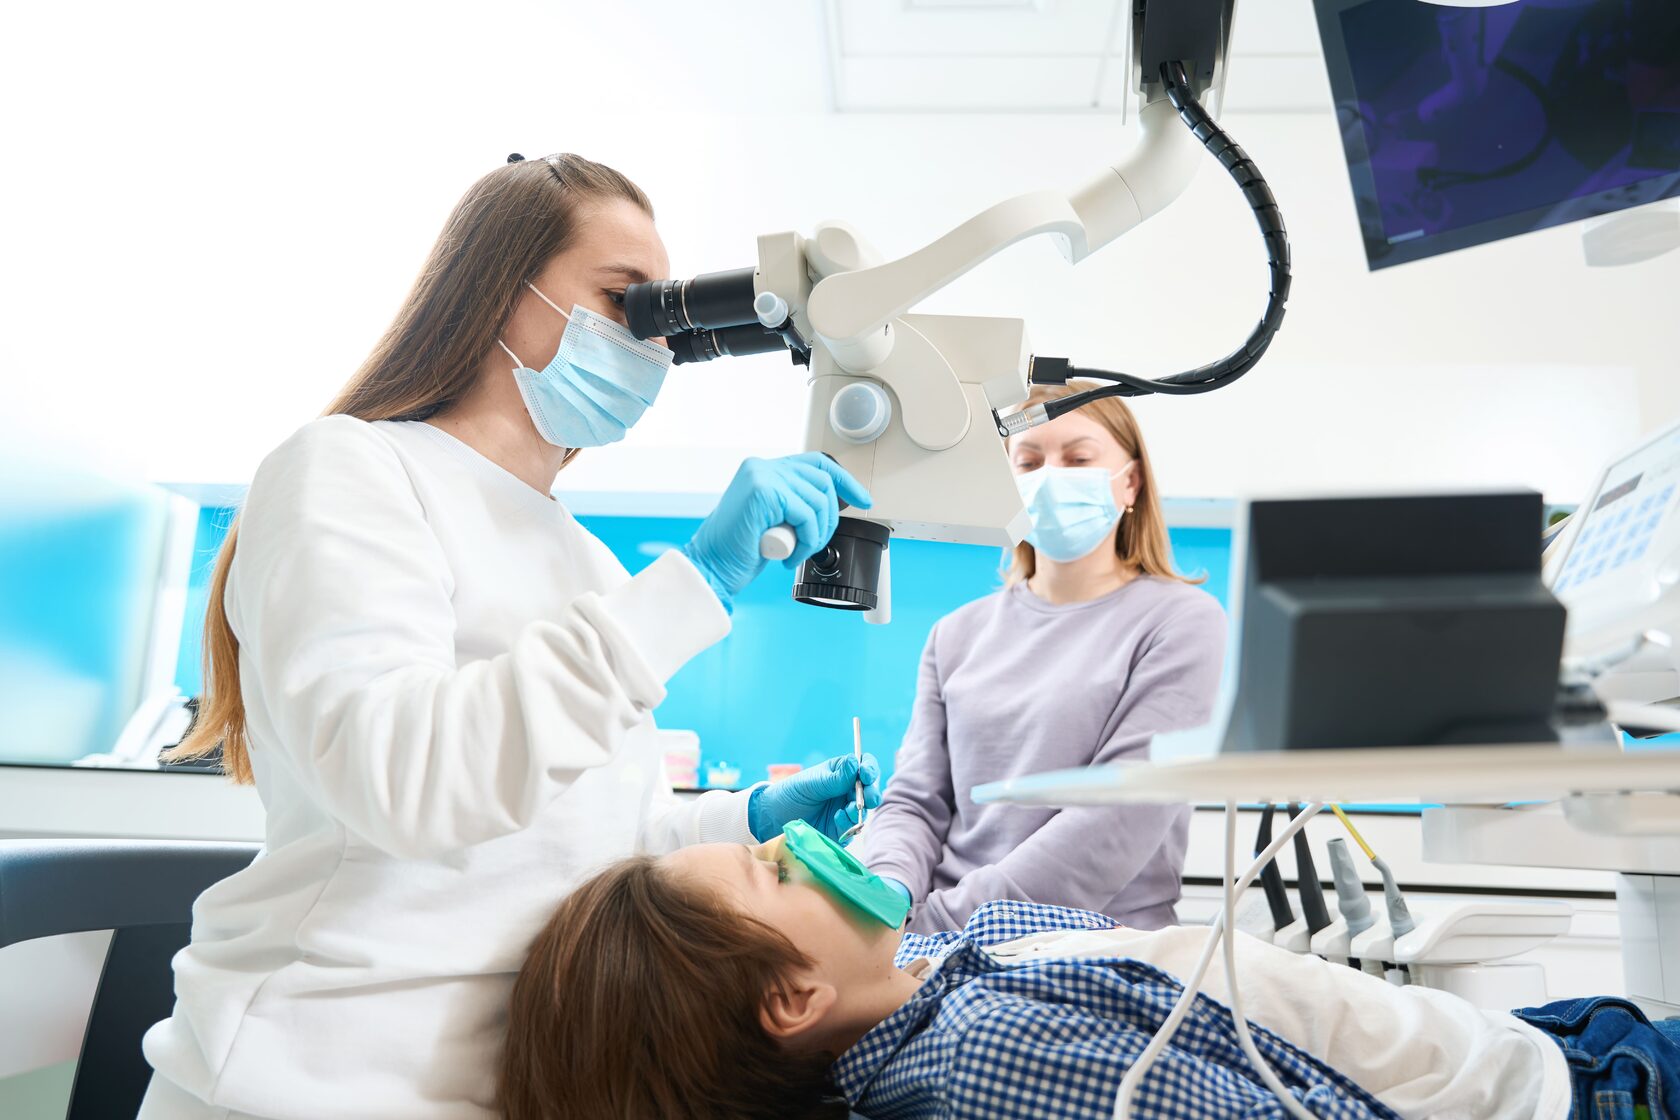 Какой стоматолог что лечит? Полезная информация для пациентов клиники Smile-at-Once